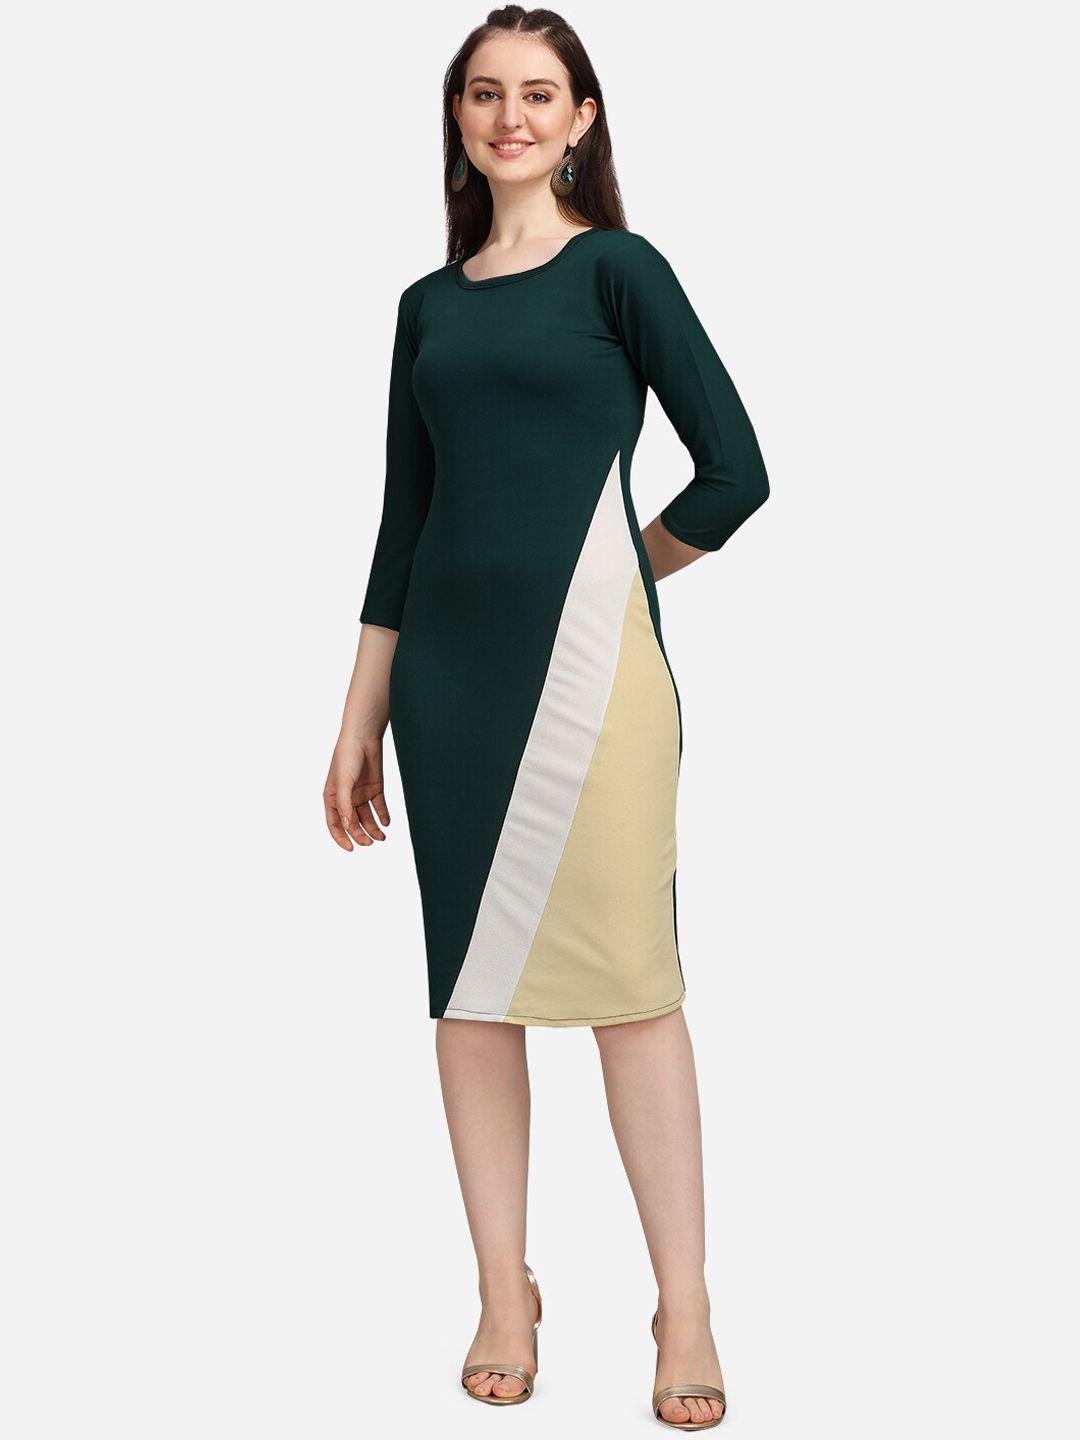 purvaja green colourblocked sheath dress